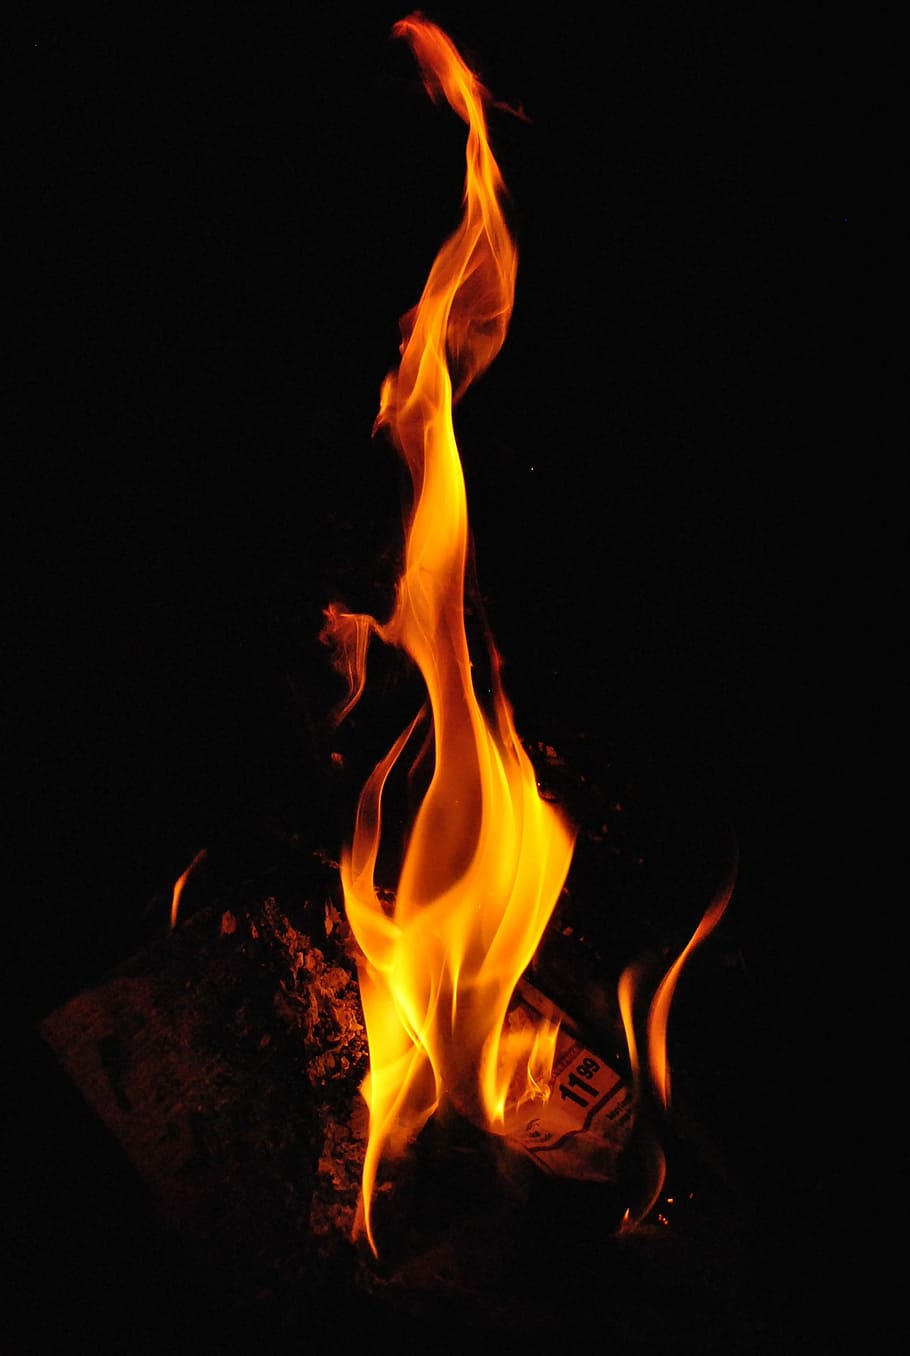 fotografía de la chimenea, chimenea, fotografía, fuego, llamas, ardiente, calor, caliente, amarillo, naranja